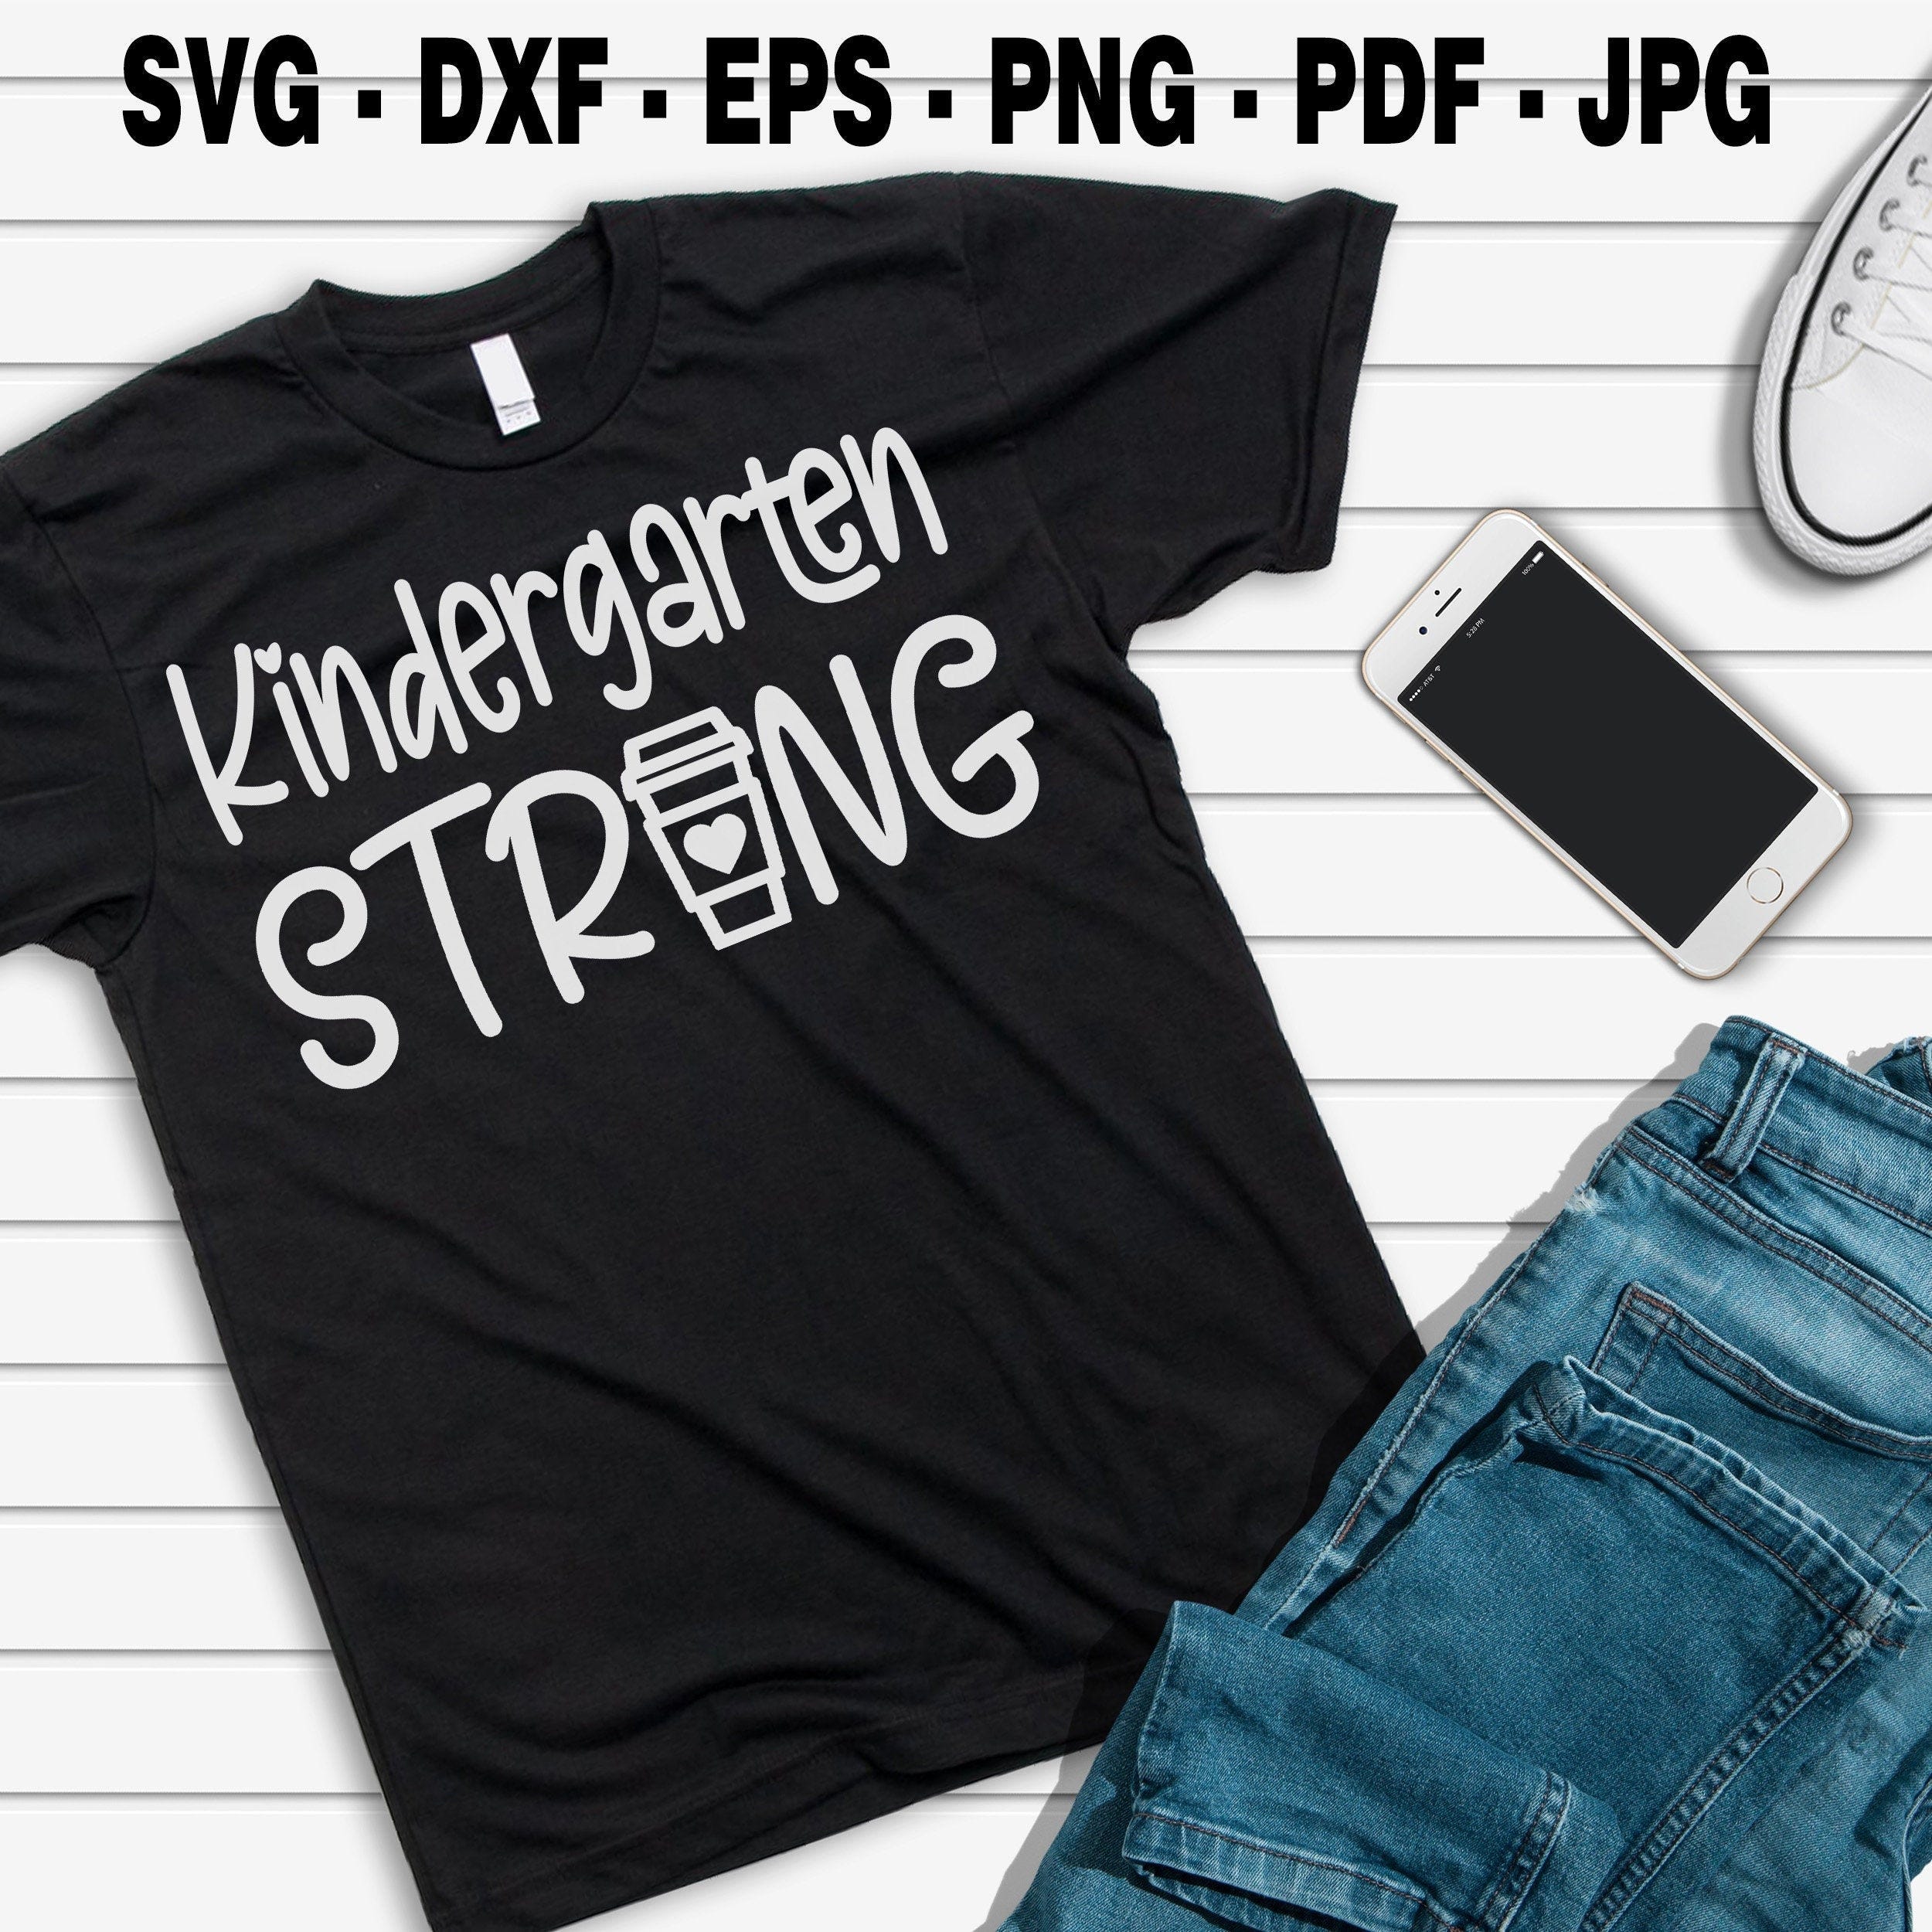 Teacher strong svg, kindergarten strong svg, kindergarten teacher SVG, svg, eps, dxf, png, jpg, pdf